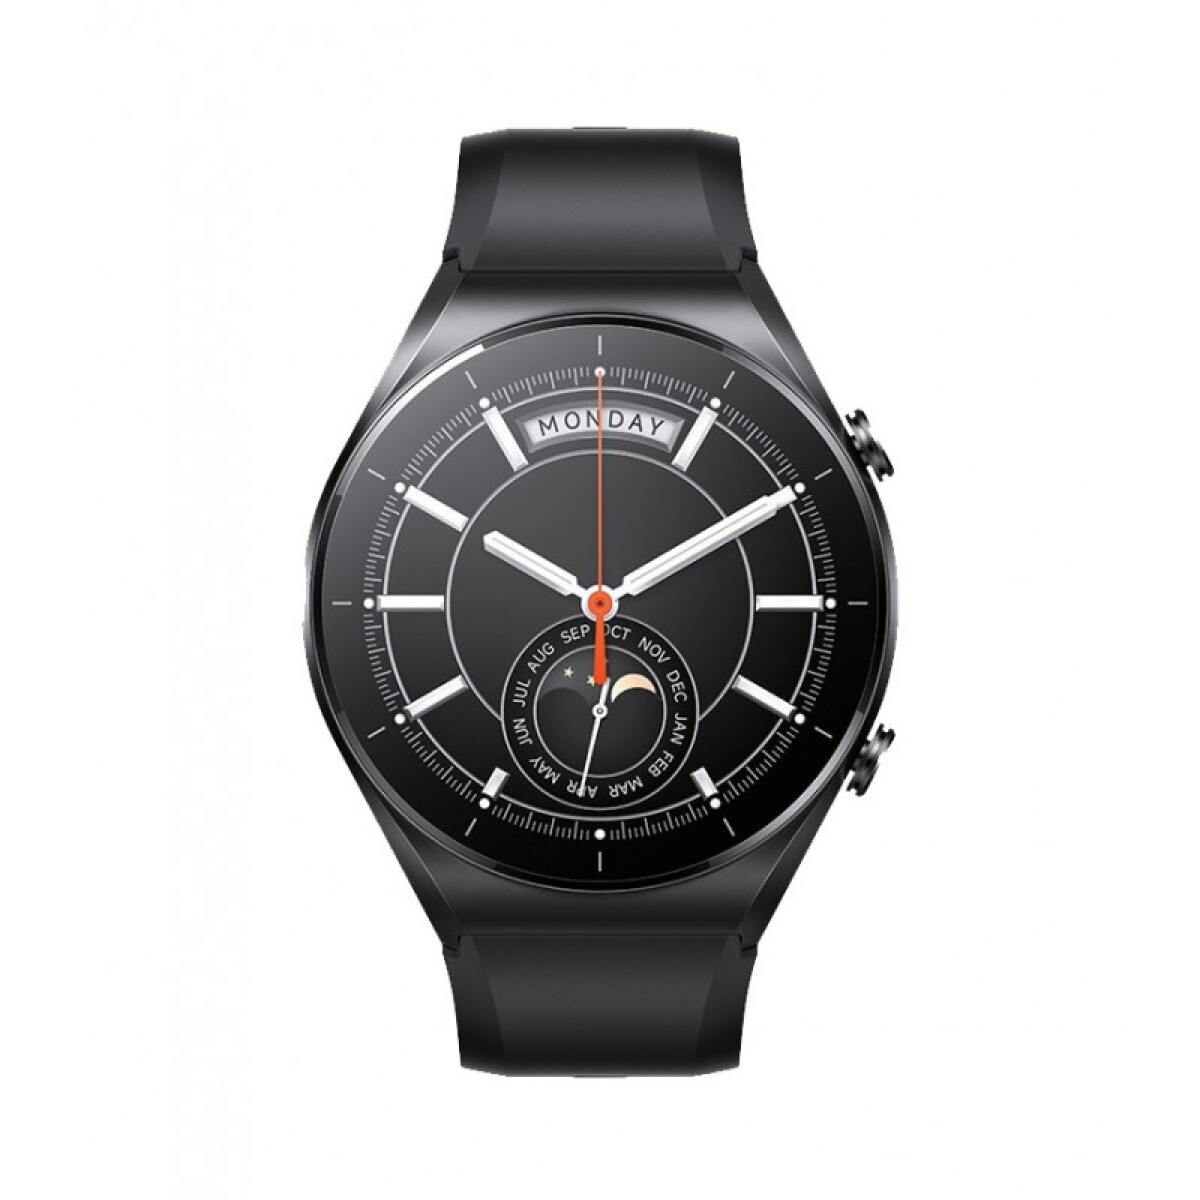 Smartwatch xiaomi mi watch s1 gps 1.43' Black